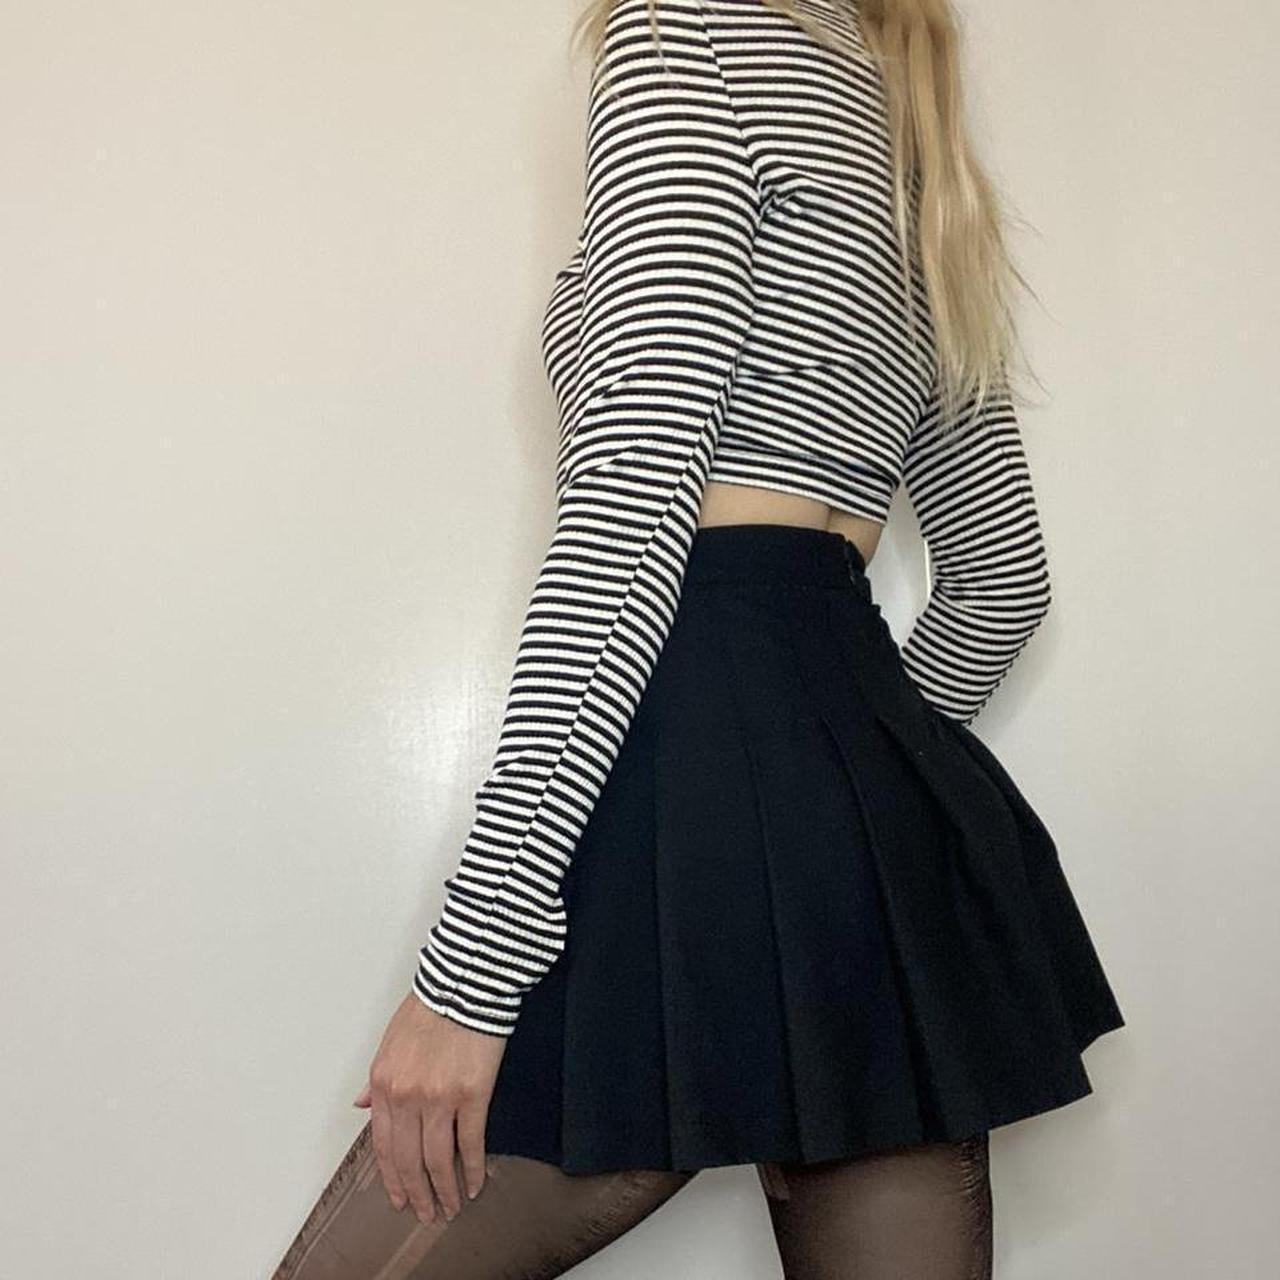 skater skirt outfits tumblr